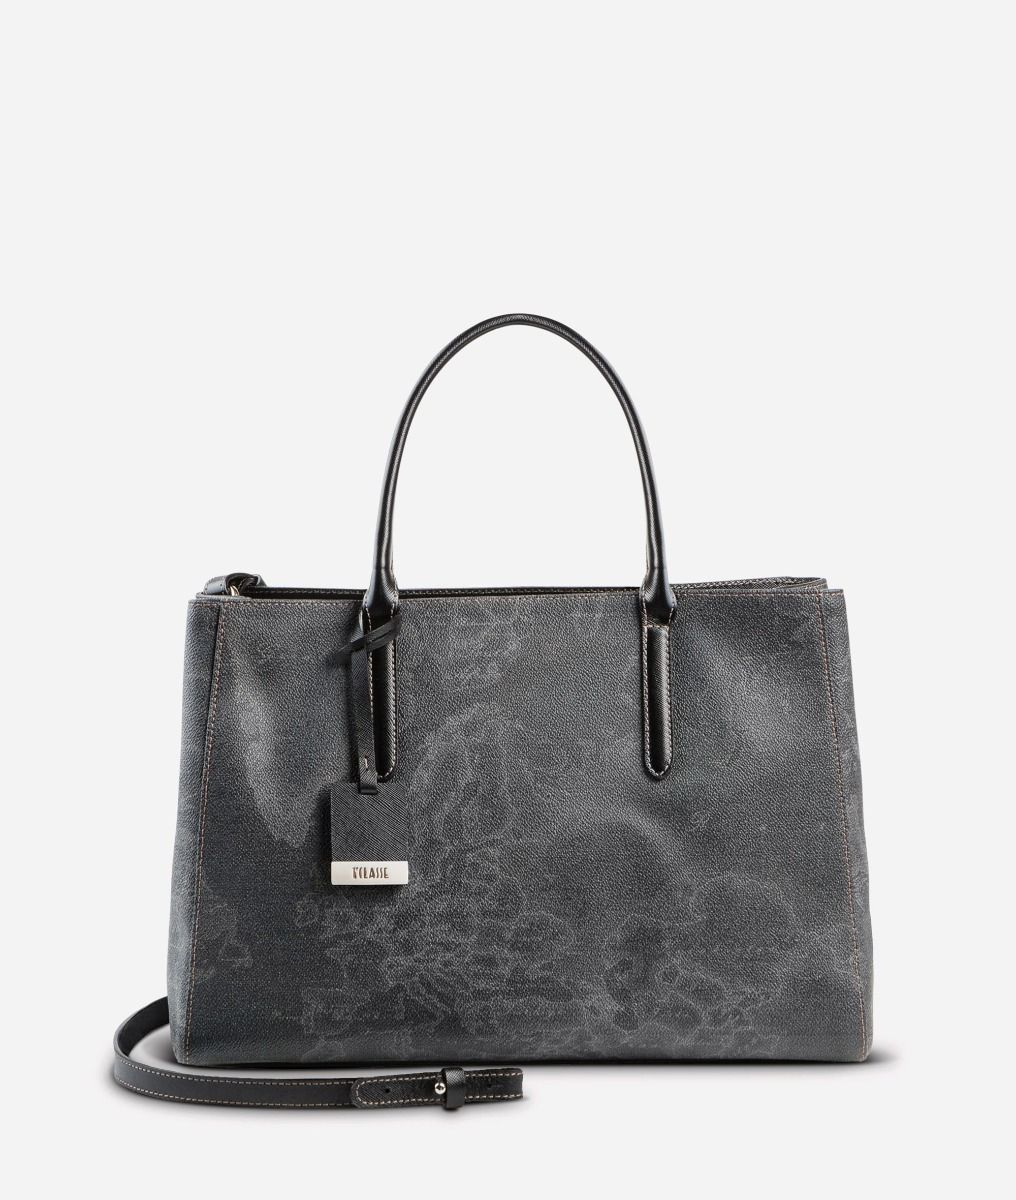 Geo Black Medium handbag,front